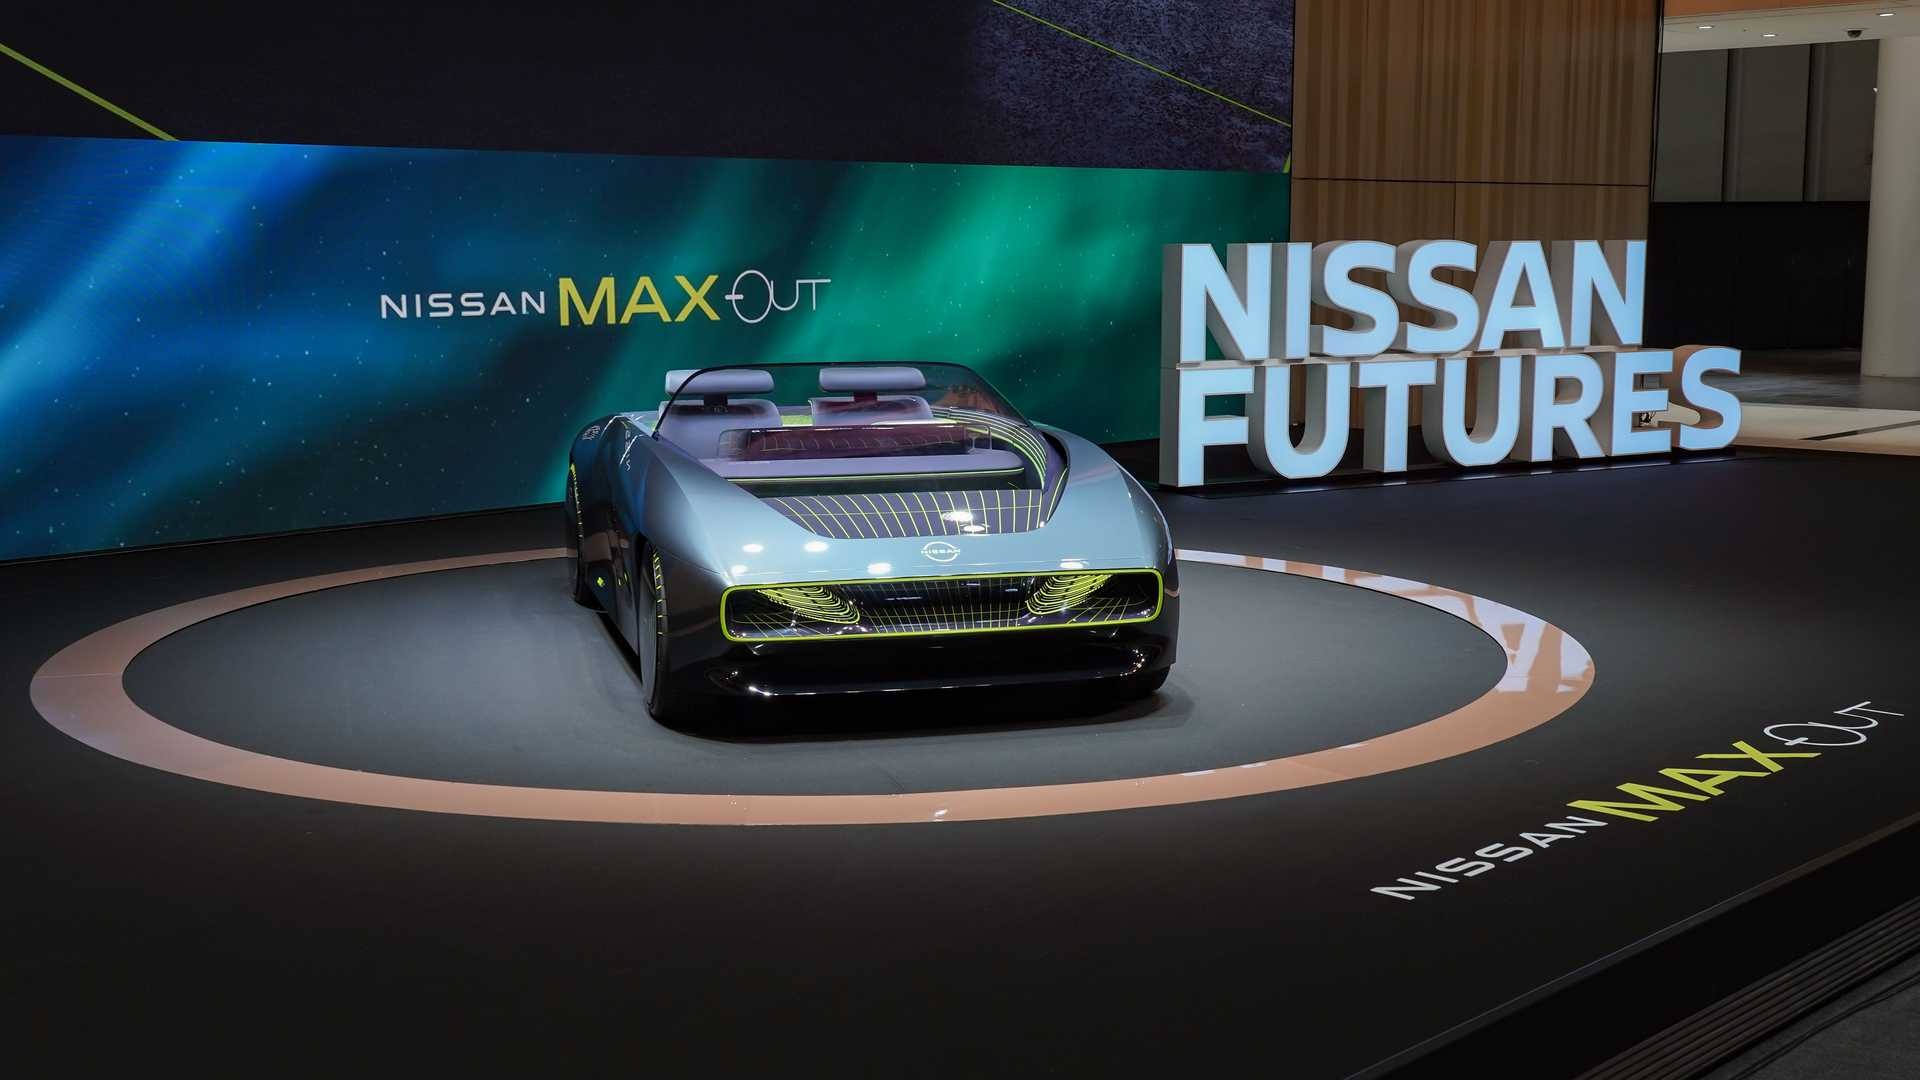 Nissan trình làng mẫu xe điện mui trần Max-Out cực hầm hố - Ảnh 1.